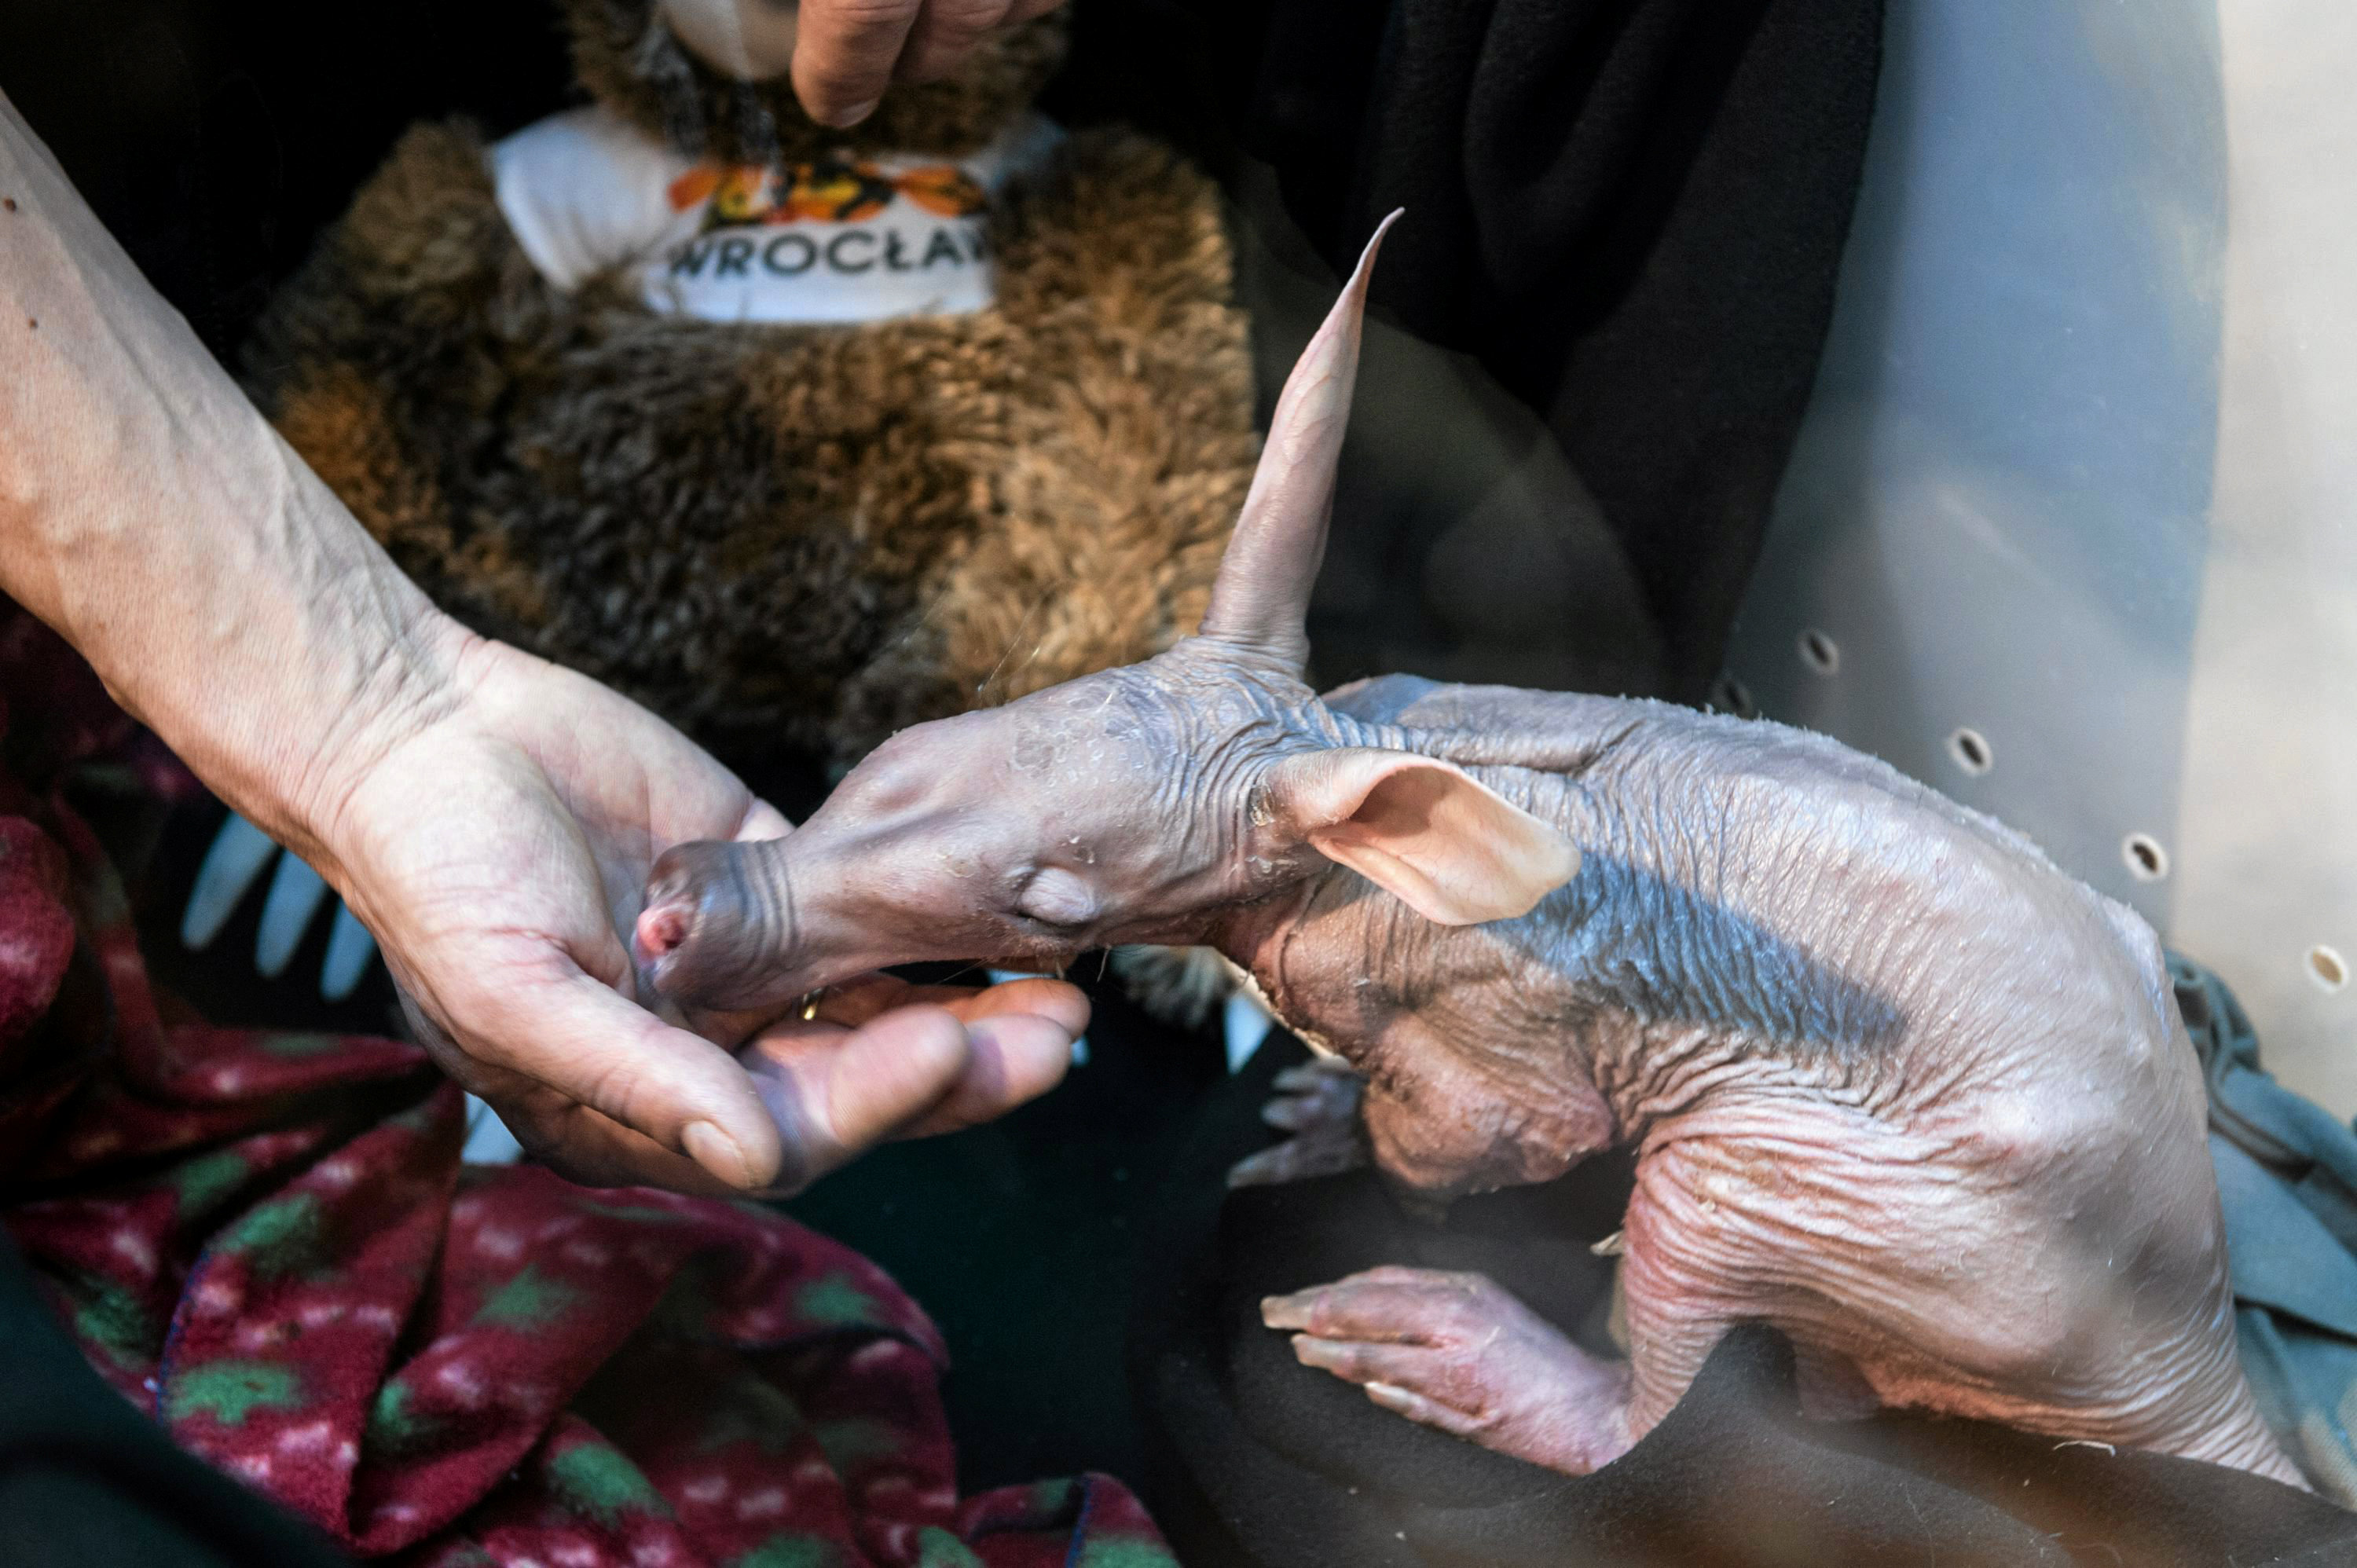 حارس بحديقة الحيوان فى بولندا يطعم مولود جديد لخنزير الأرض